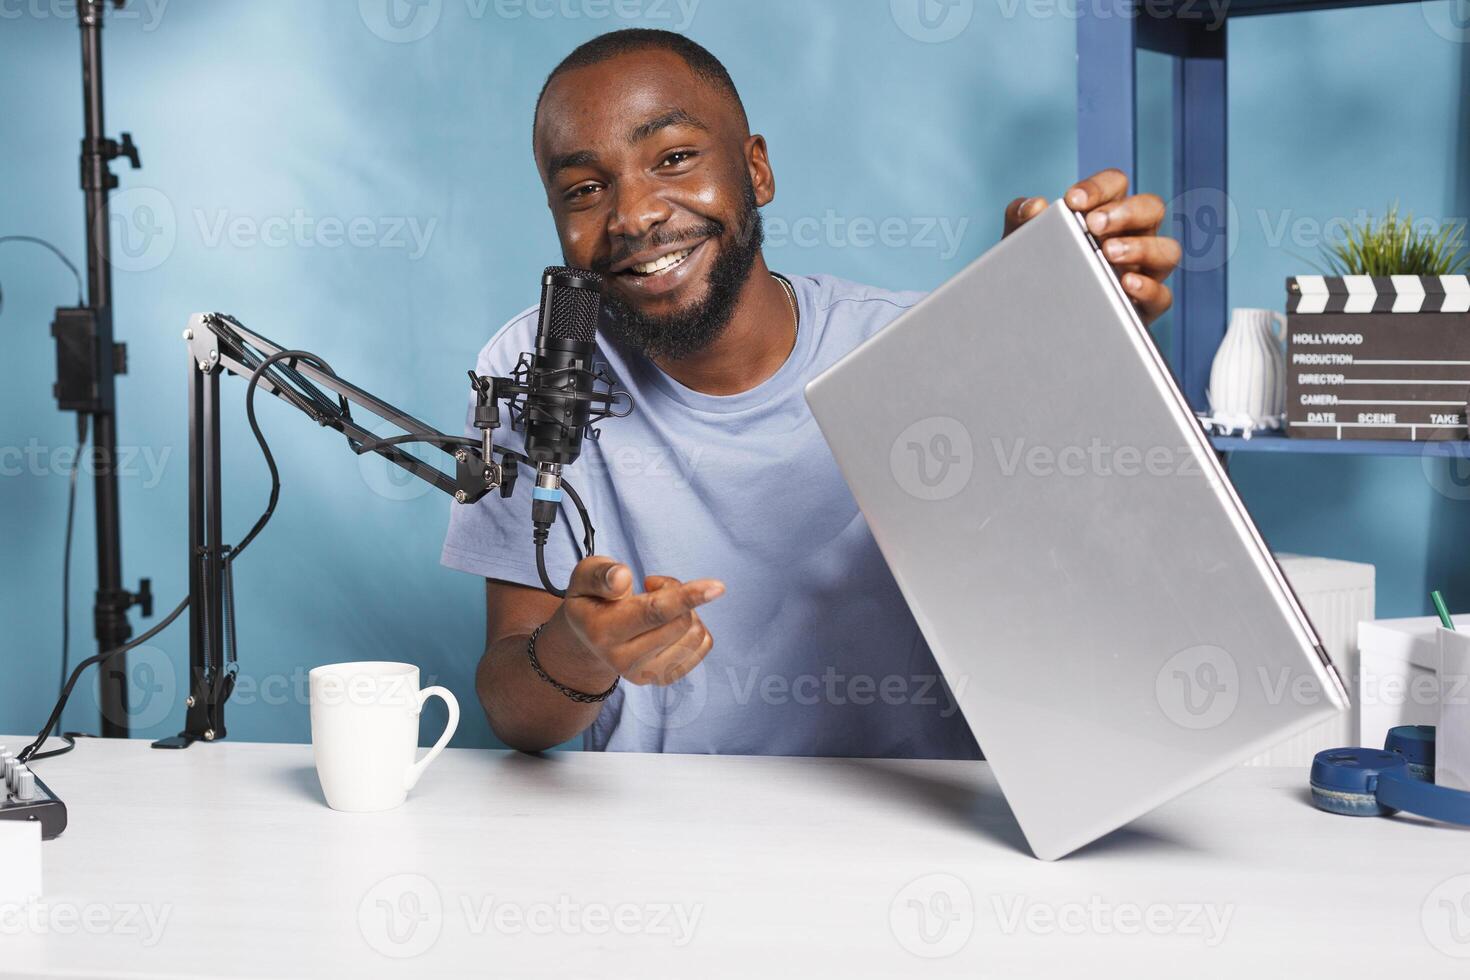 sonriente africano americano blogger participación ordenador portátil y grabación producto vídeo presentación. social medios de comunicación hombre de influencia revisando nuevo portátil computadora, mirando a cámara y transmisión foto